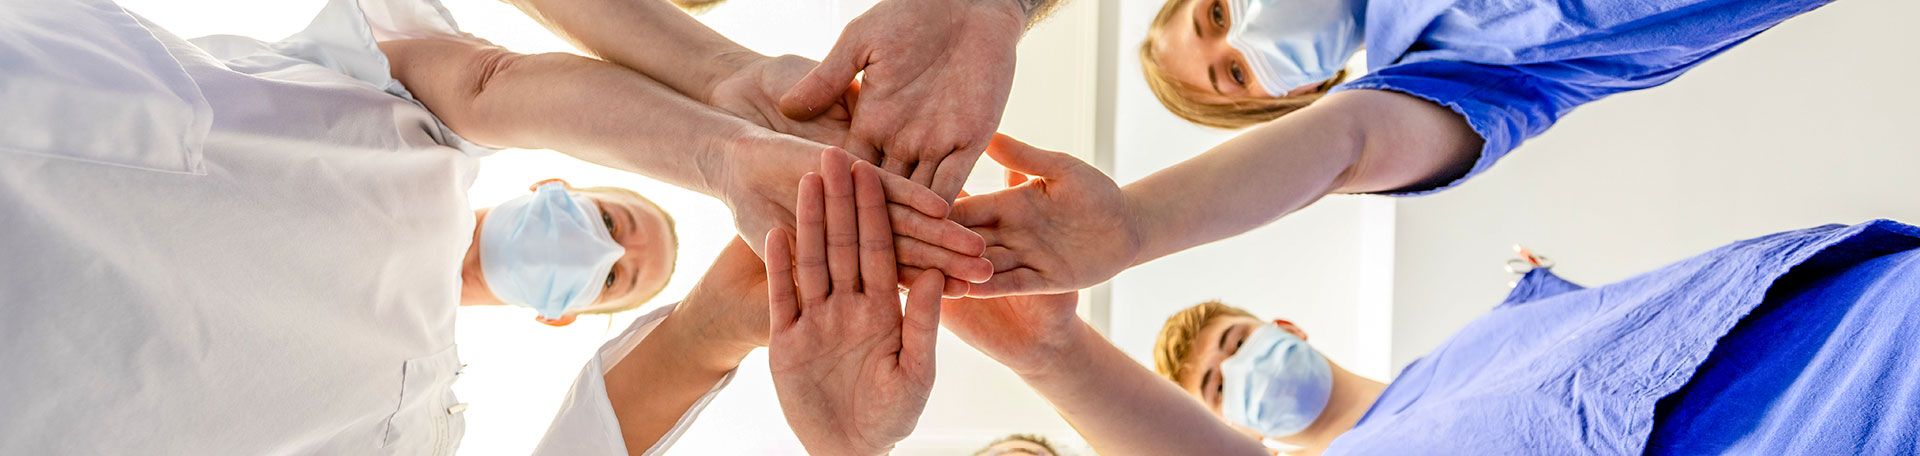 Headerbild: Klinikpersonal legen die Hände zusammen als Zeichen von Teamgedanke